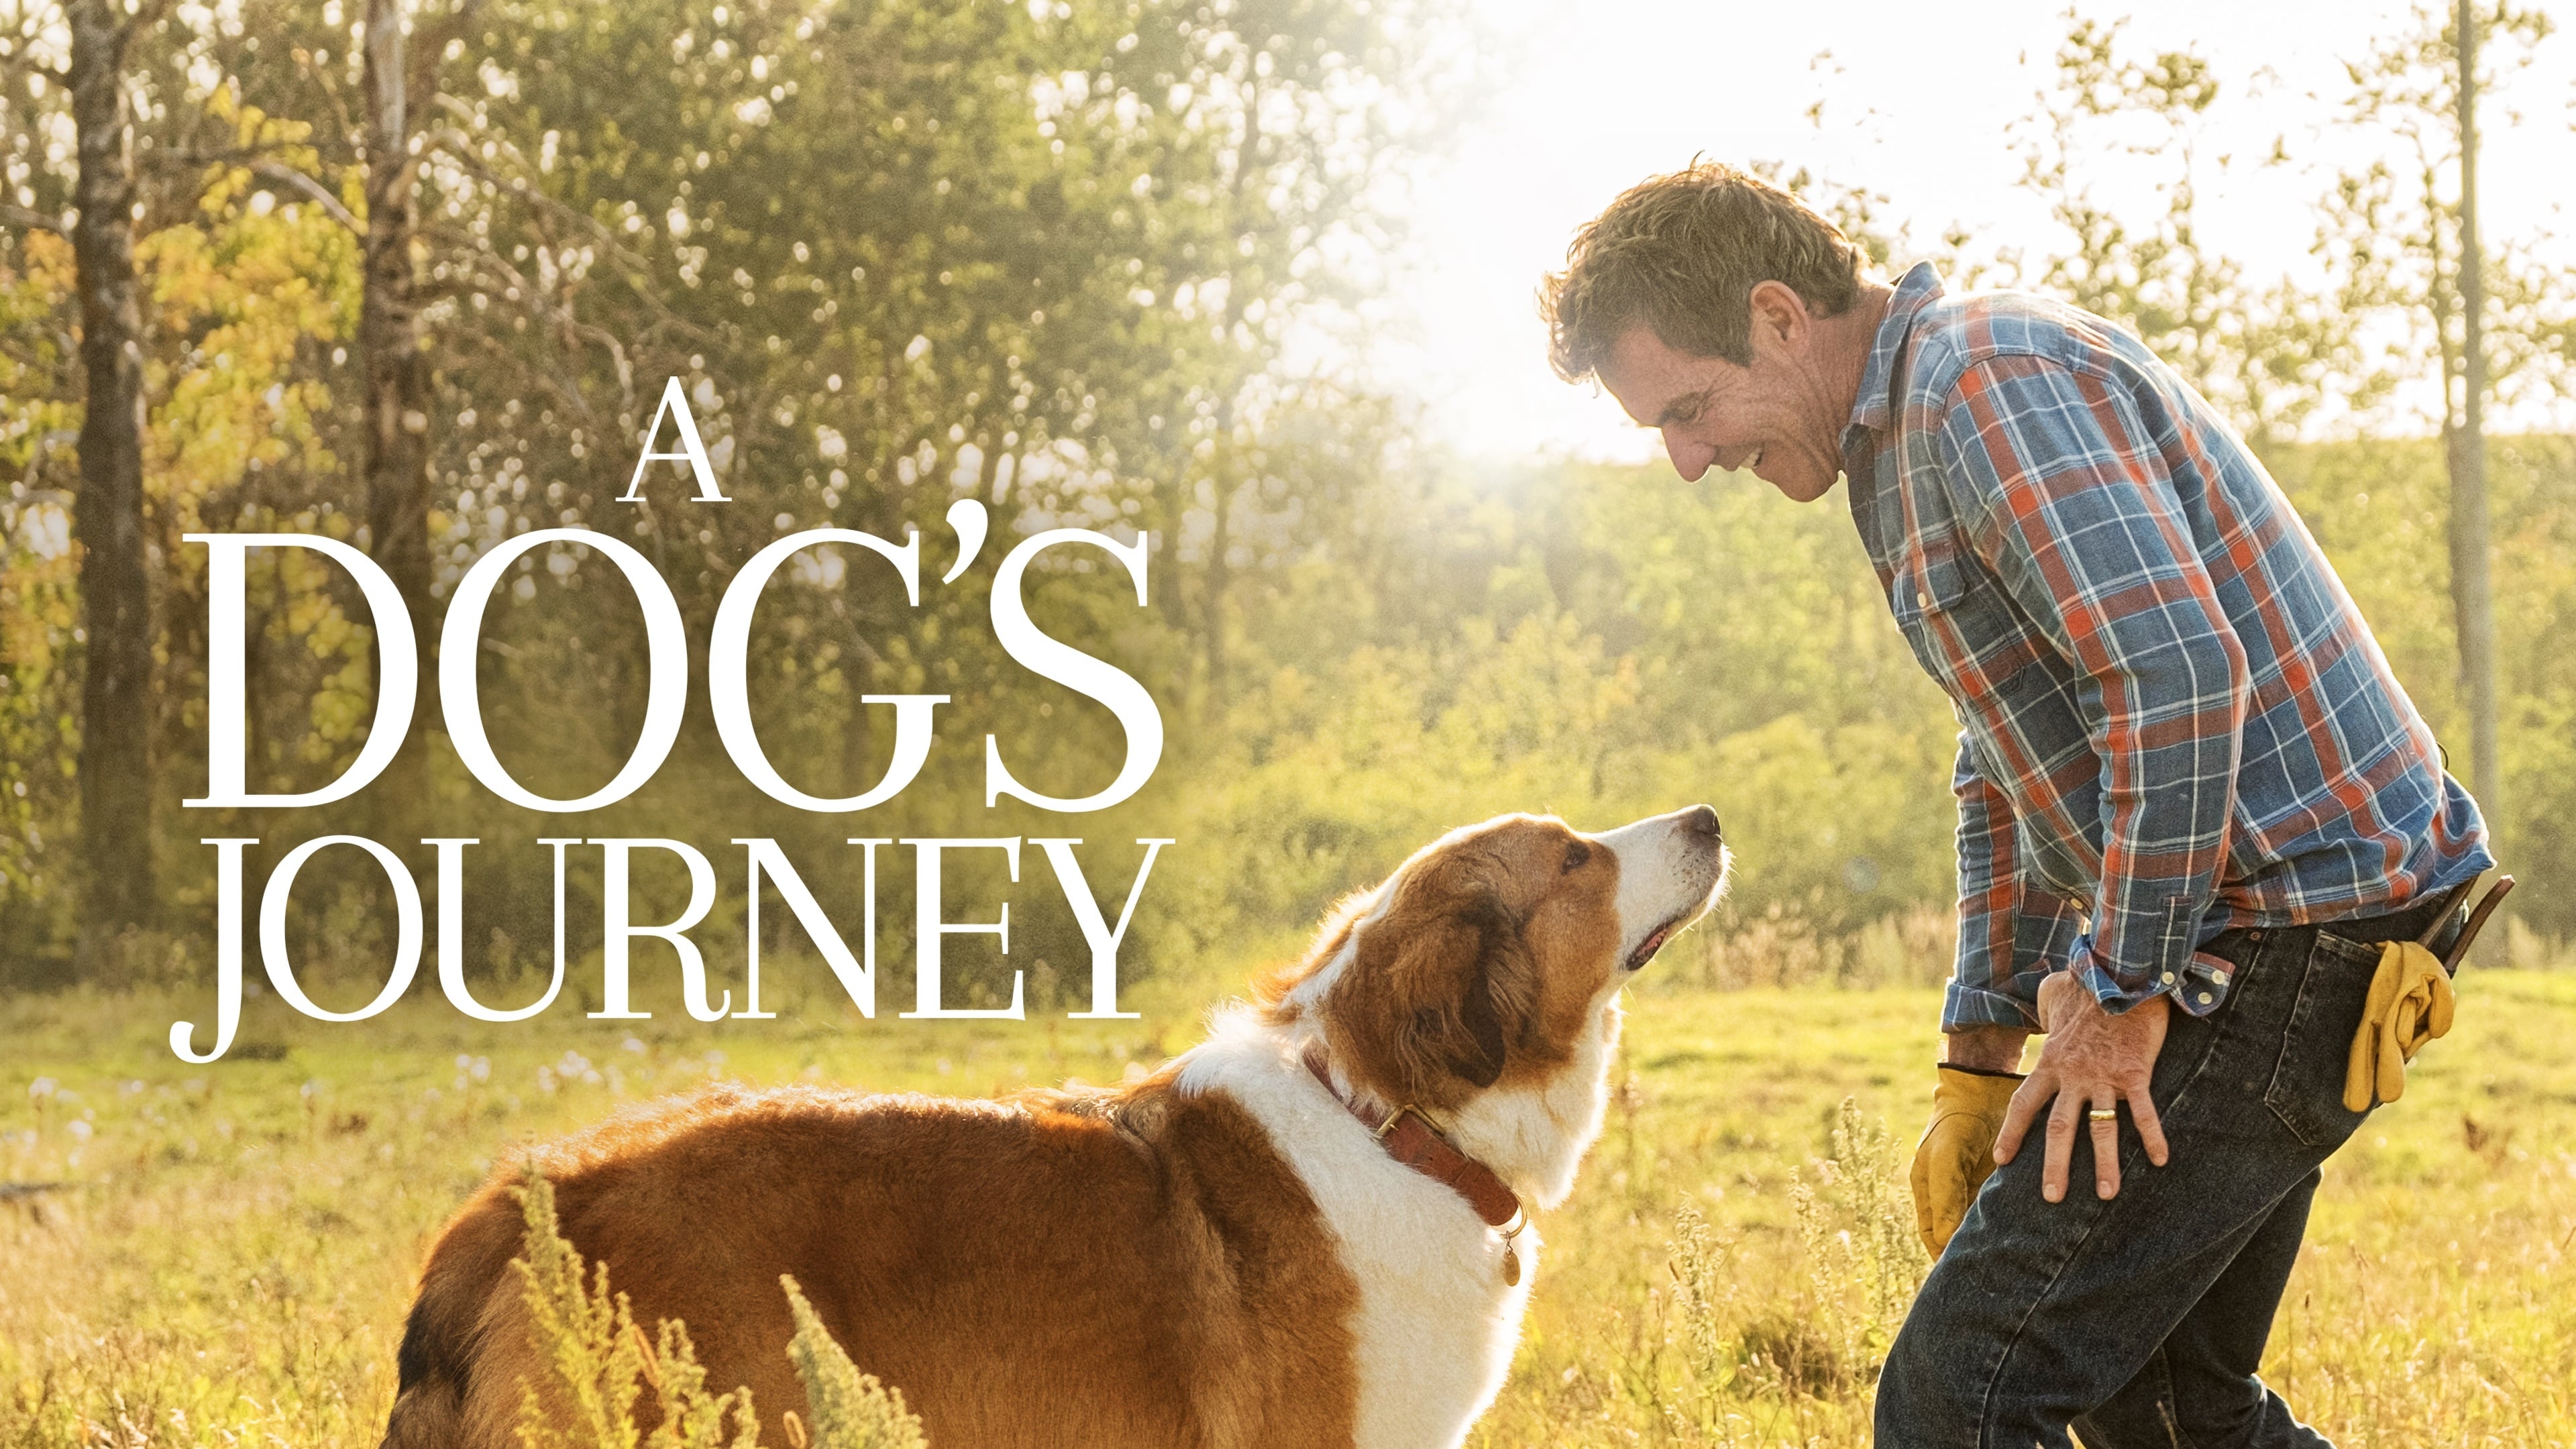 A Dog's Journey (2019)